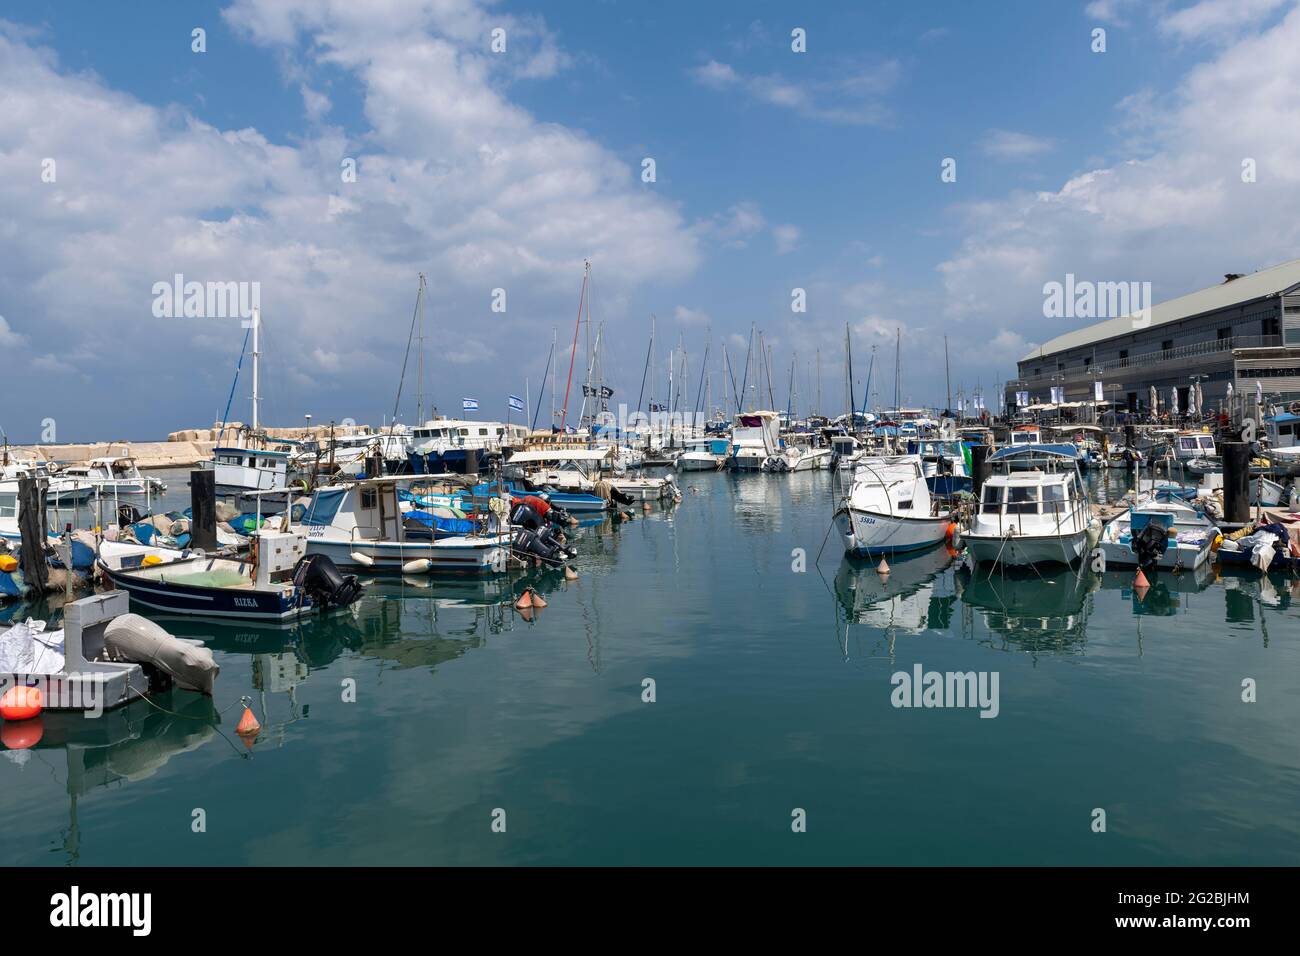 Fishing boats, yachts and touristic boats at old Jaffa marina. Tel Aviv. Israel Stock Photo